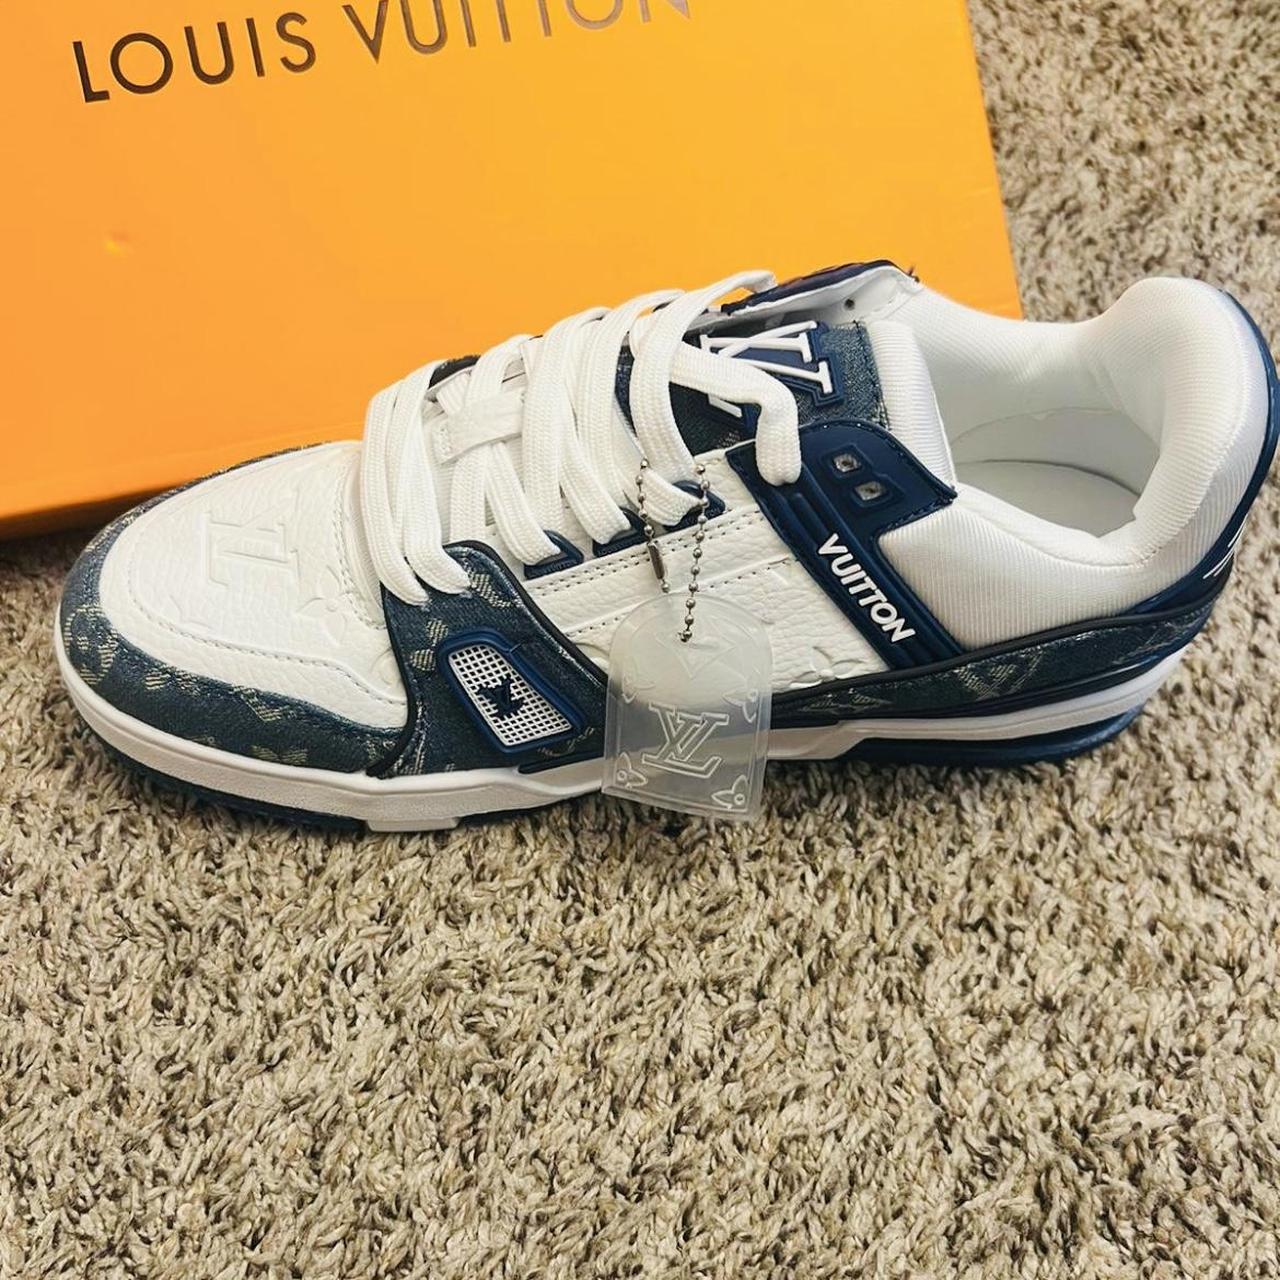 Unisex Vans LV Louis Vuitton Custom Sneakers. This - Depop